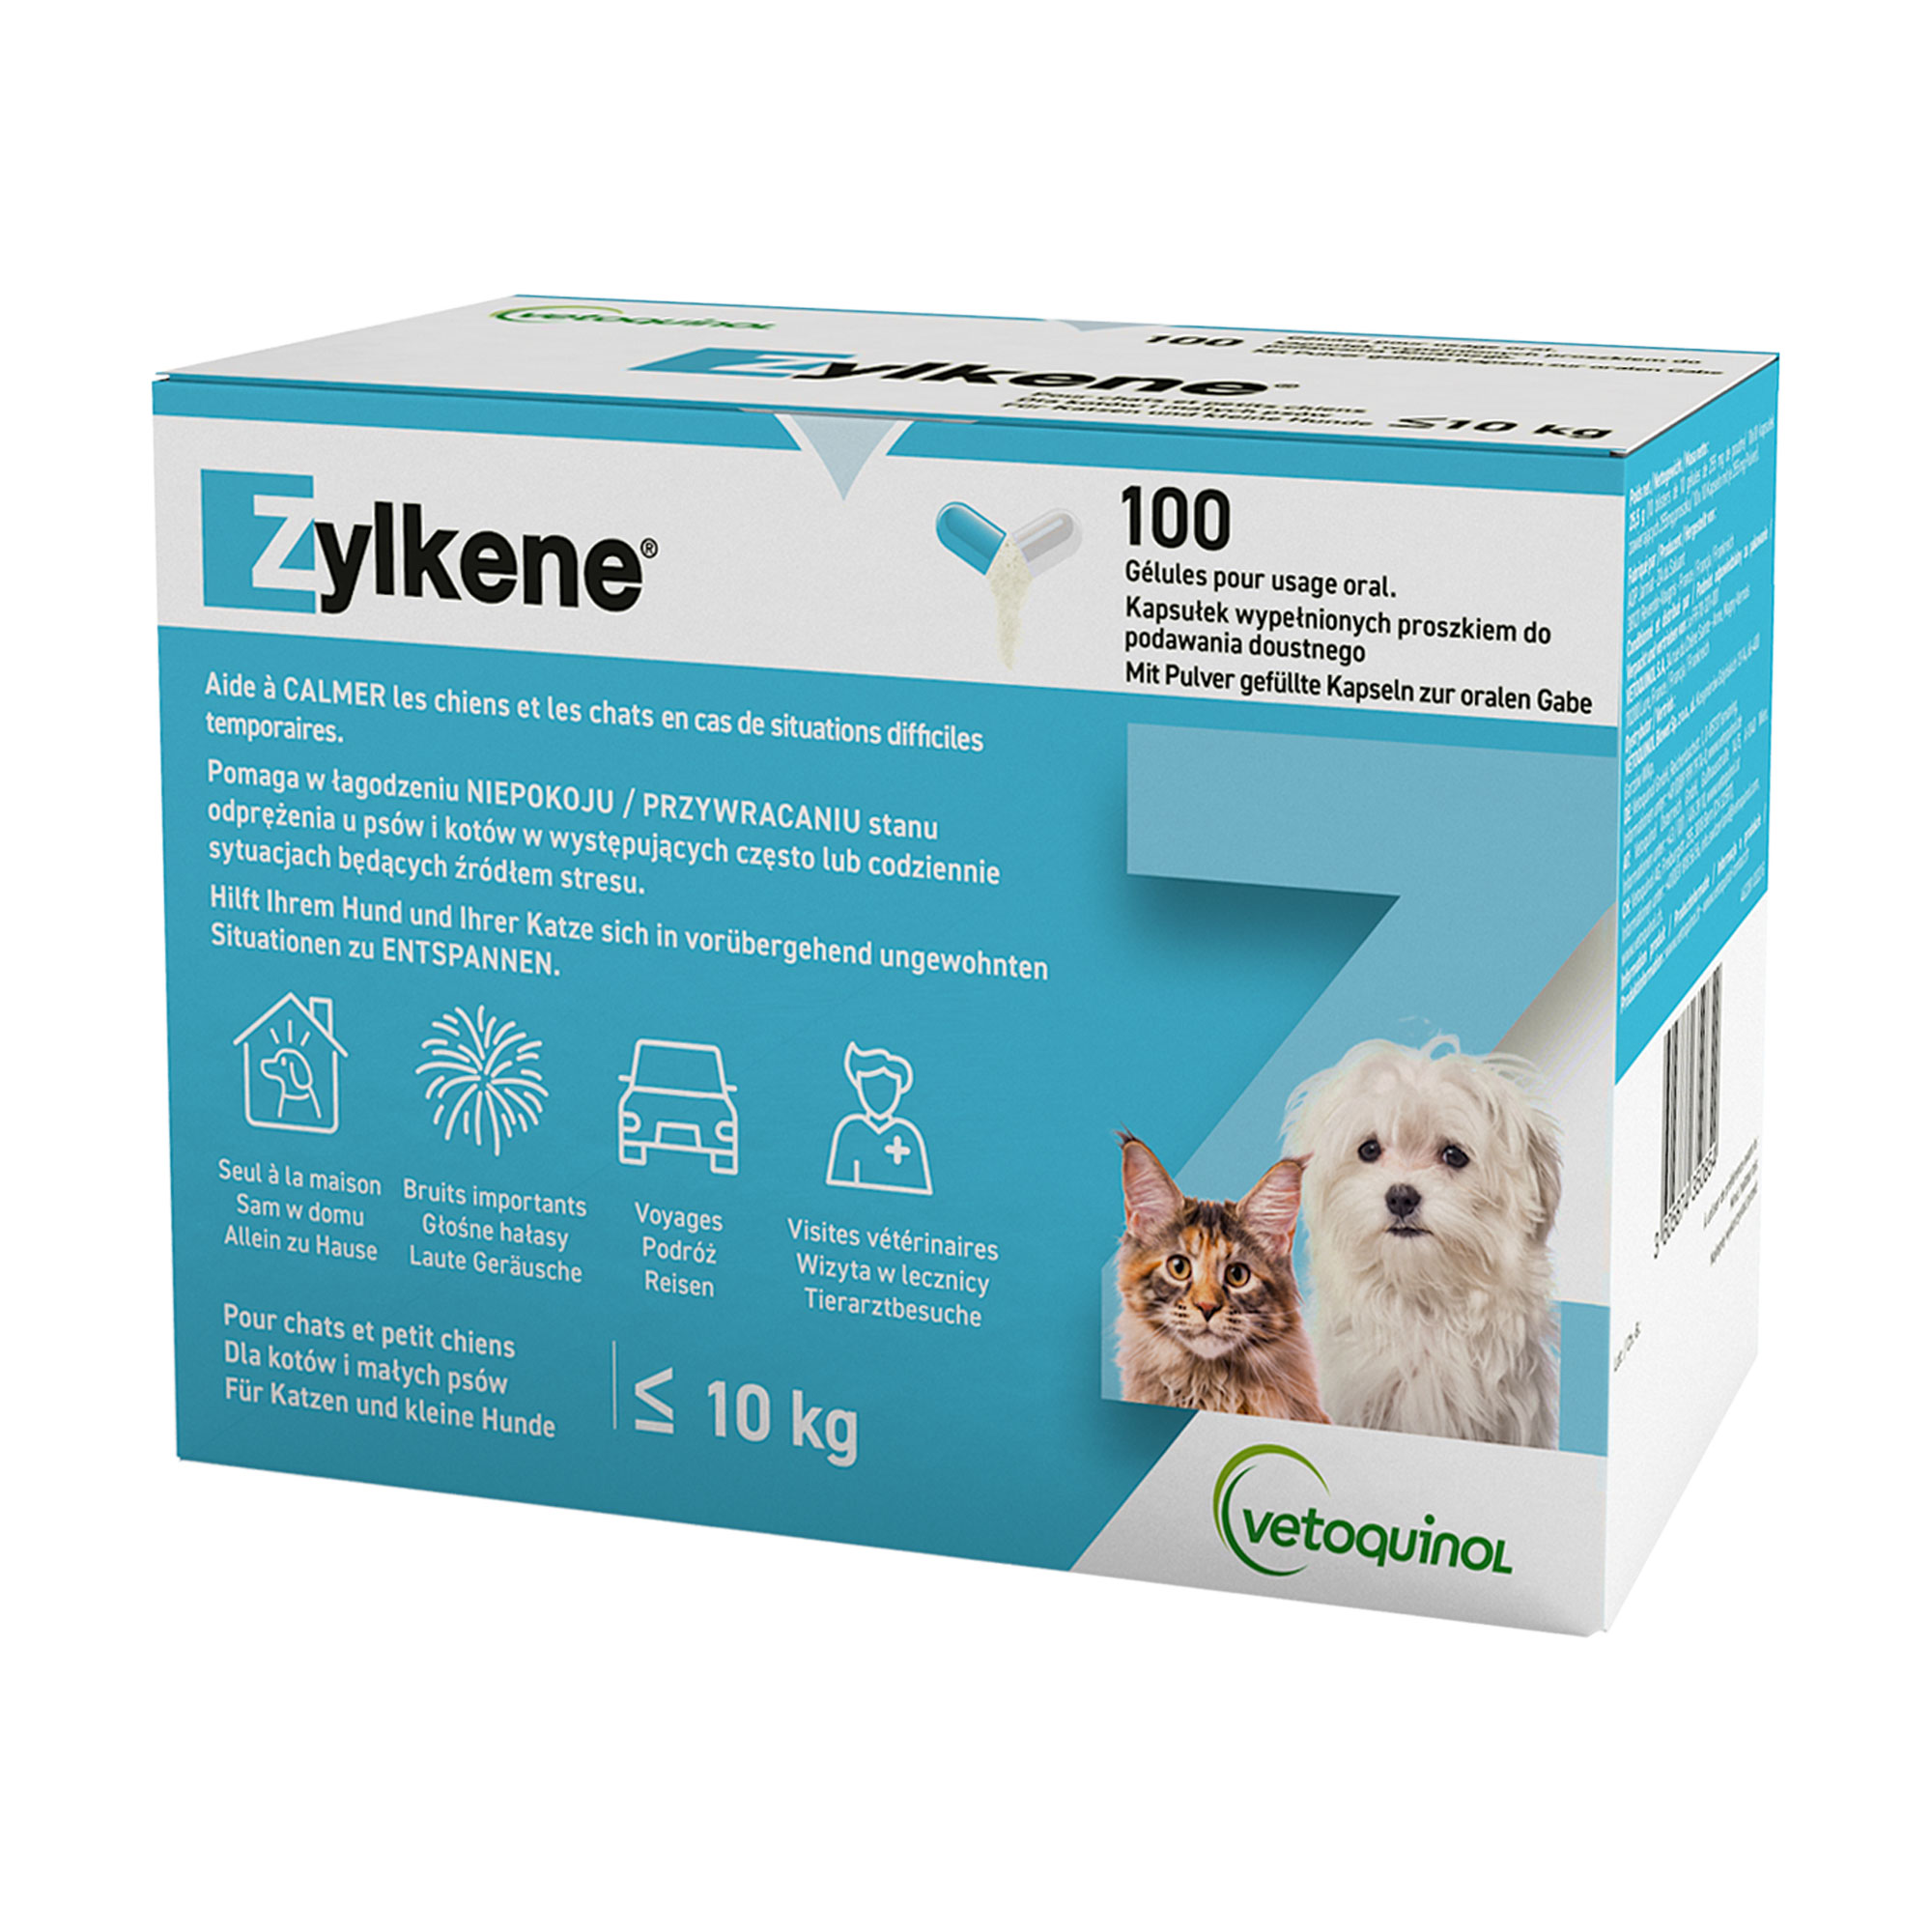 Ergänzungsfuttermittel für Katzen und kleine Hunde (<10 kg).